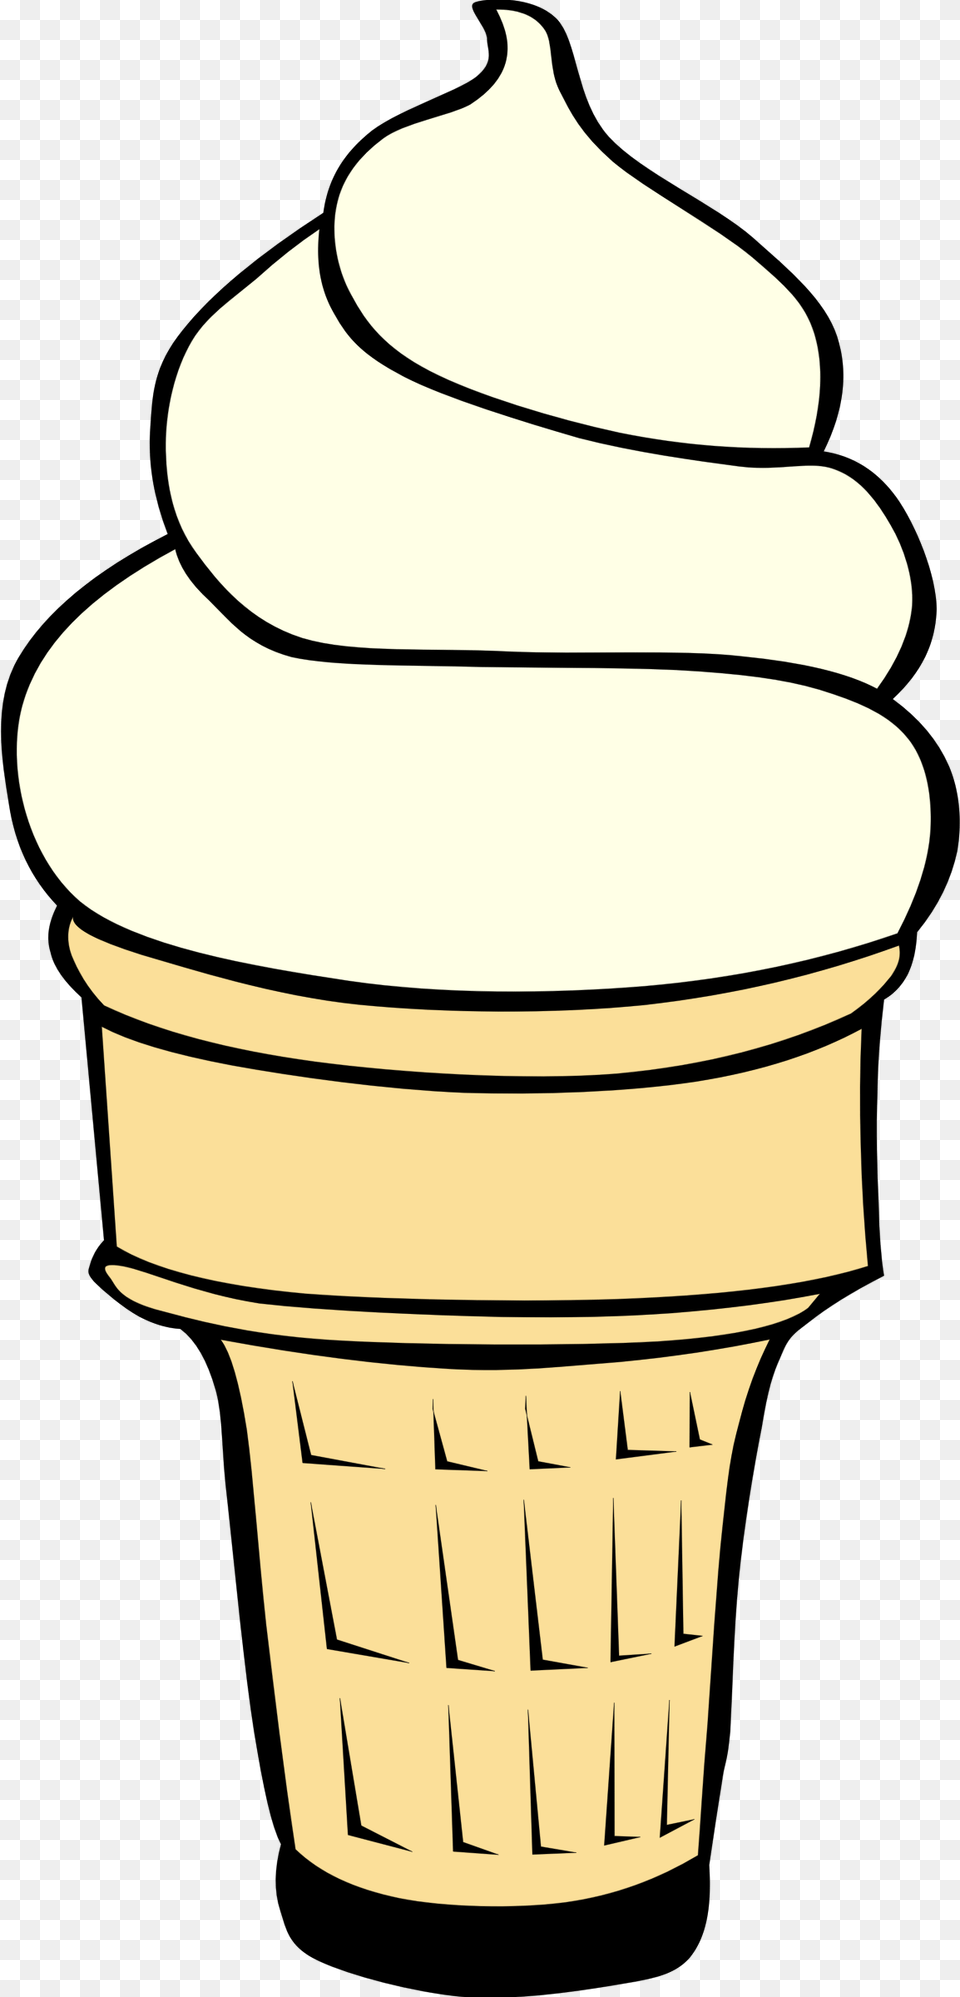 Ice Cream Cone Clip Art Summer Clipart Ice Cream Inside, Dessert, Food, Ice Cream, Soft Serve Ice Cream Free Transparent Png